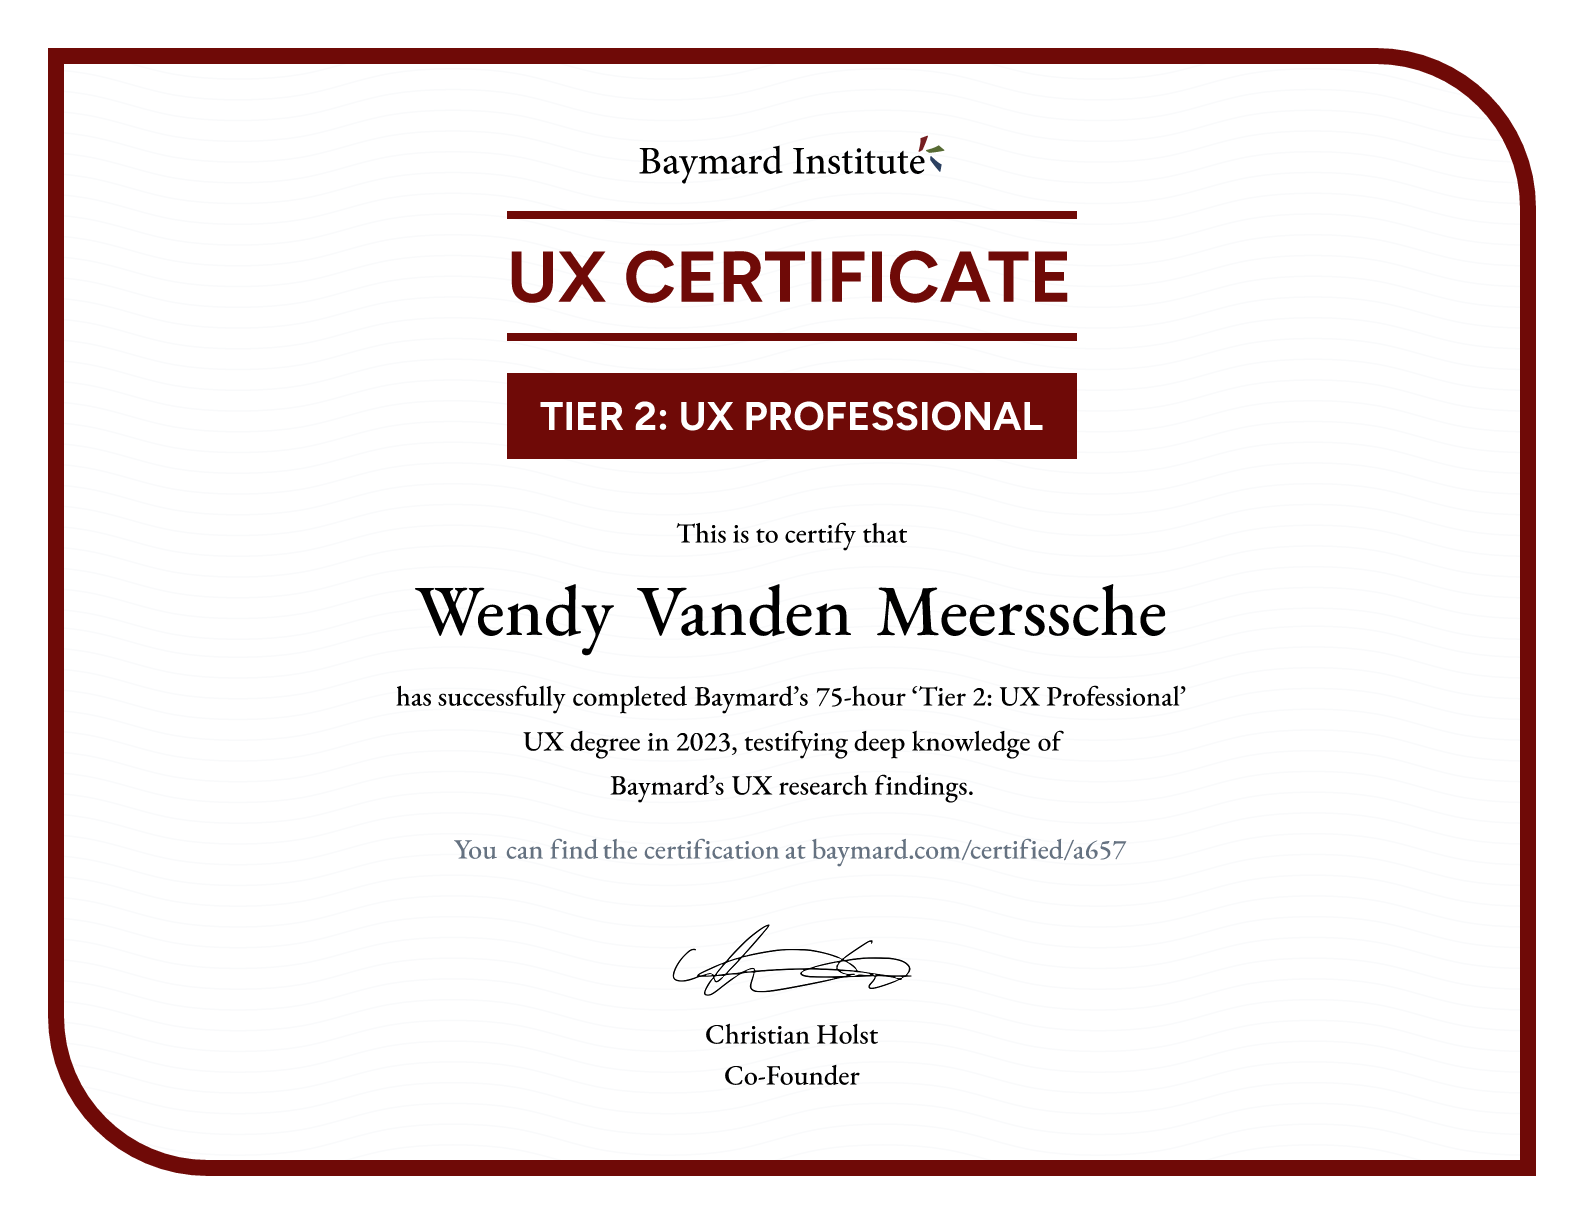 Wendy Vanden Meerssche’s certificate